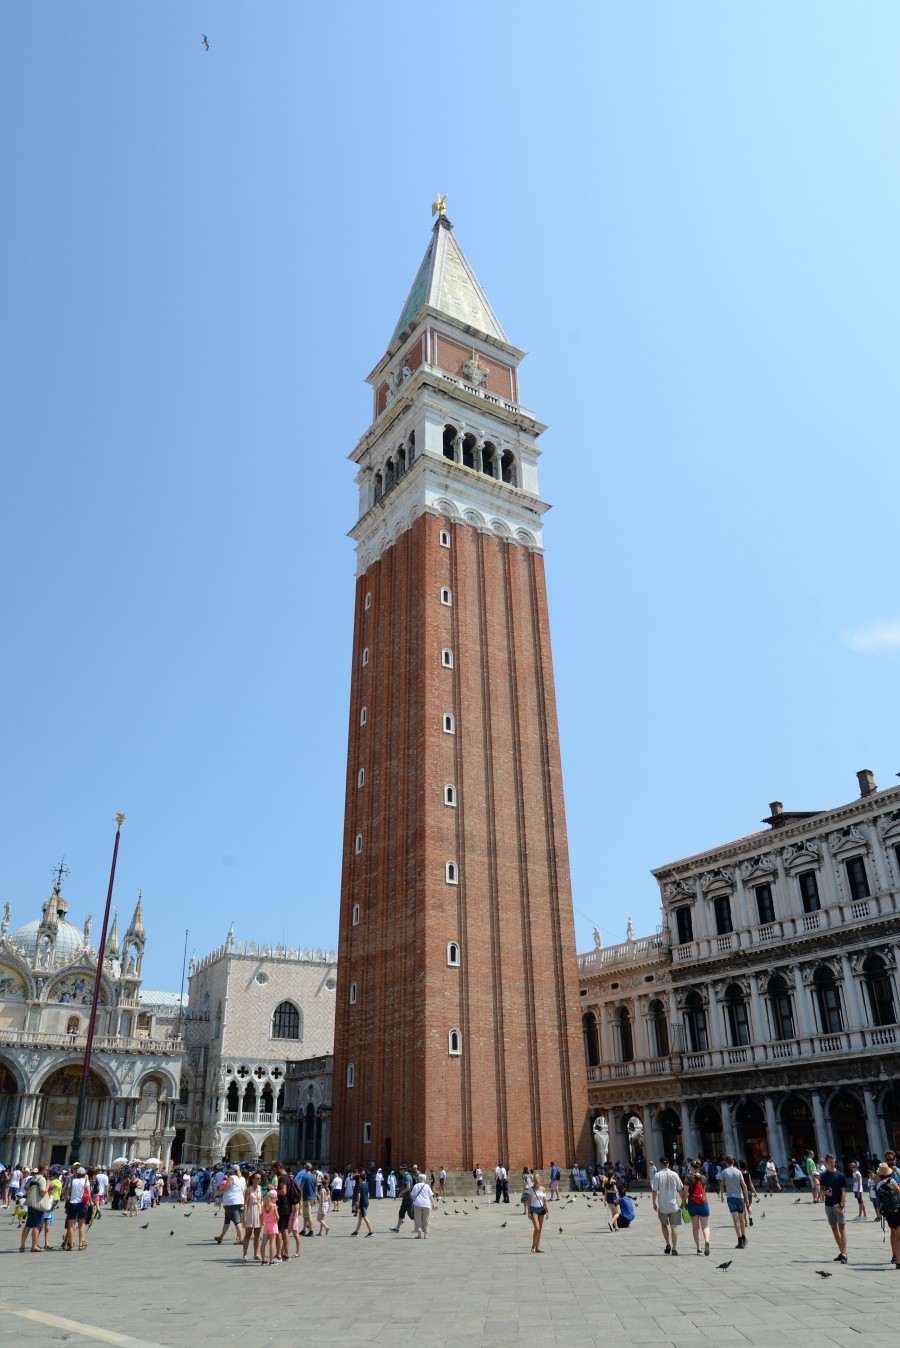 Campanile in Venice